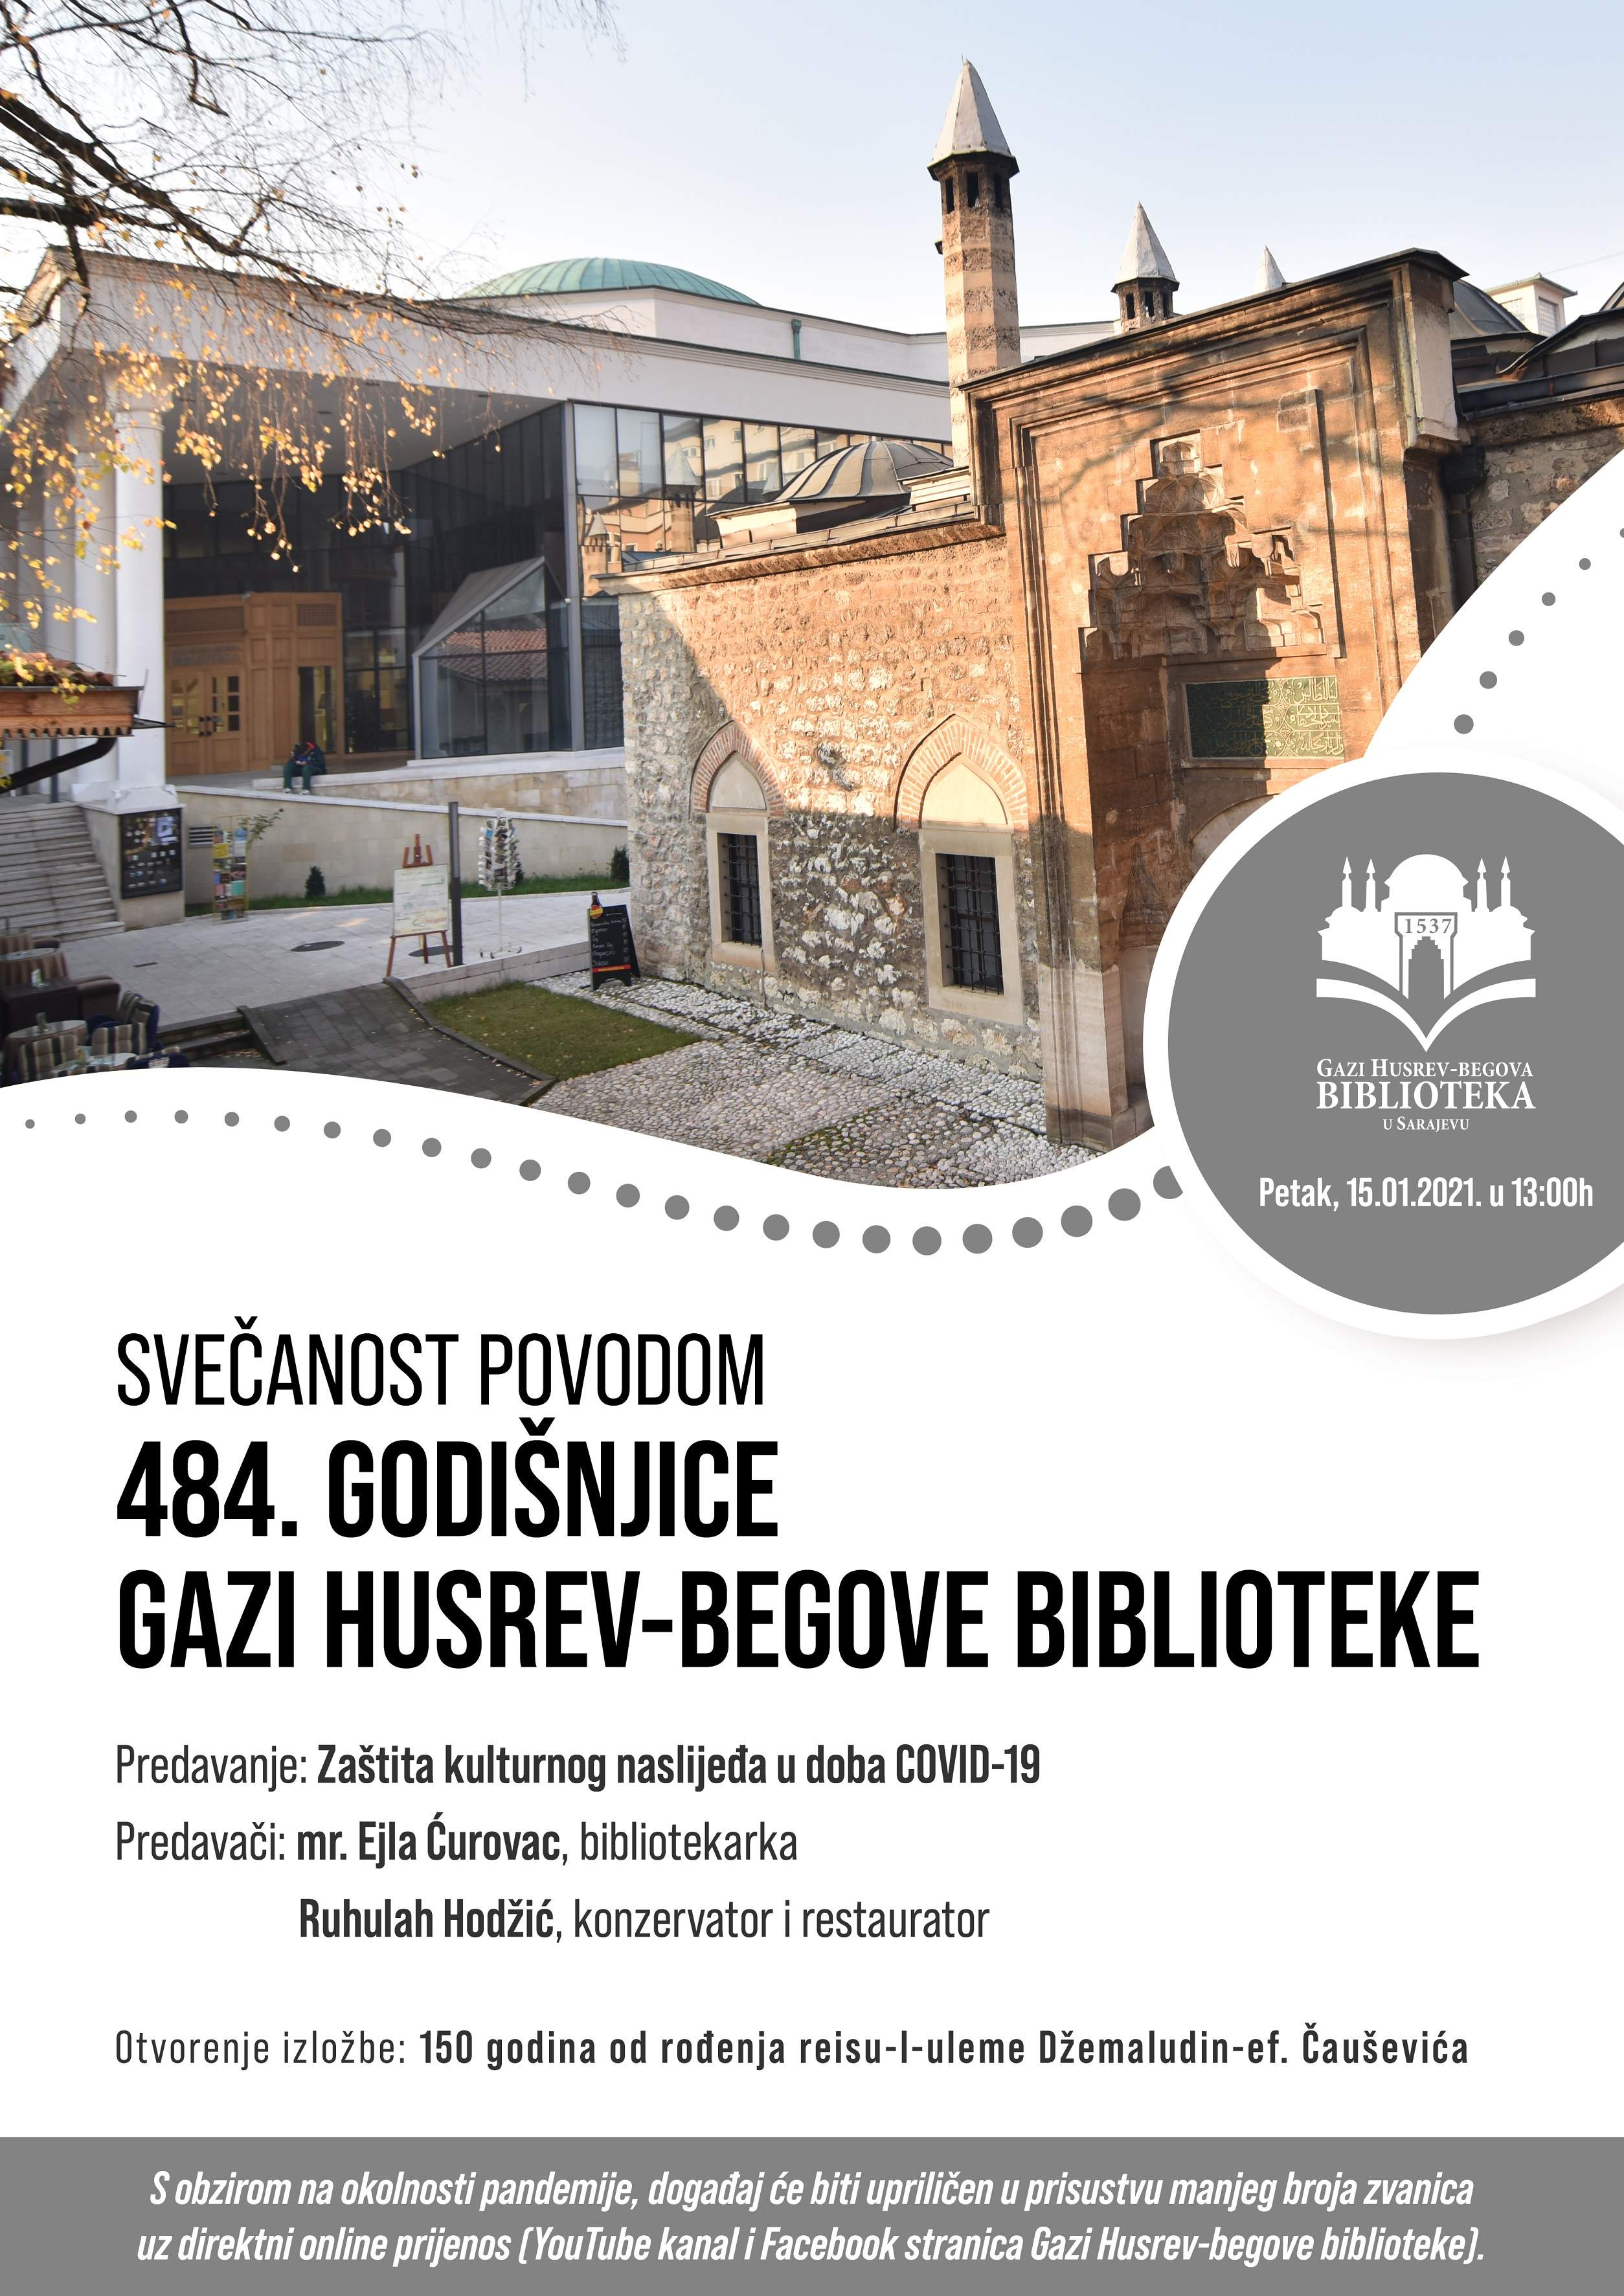 Gazi Husrev-begova biblioteka, 484. godišnjica osnivanja i rada, plakat - Gazi Husrev-begova biblioteka iduće sedmice obilježava 484. godišnjicu